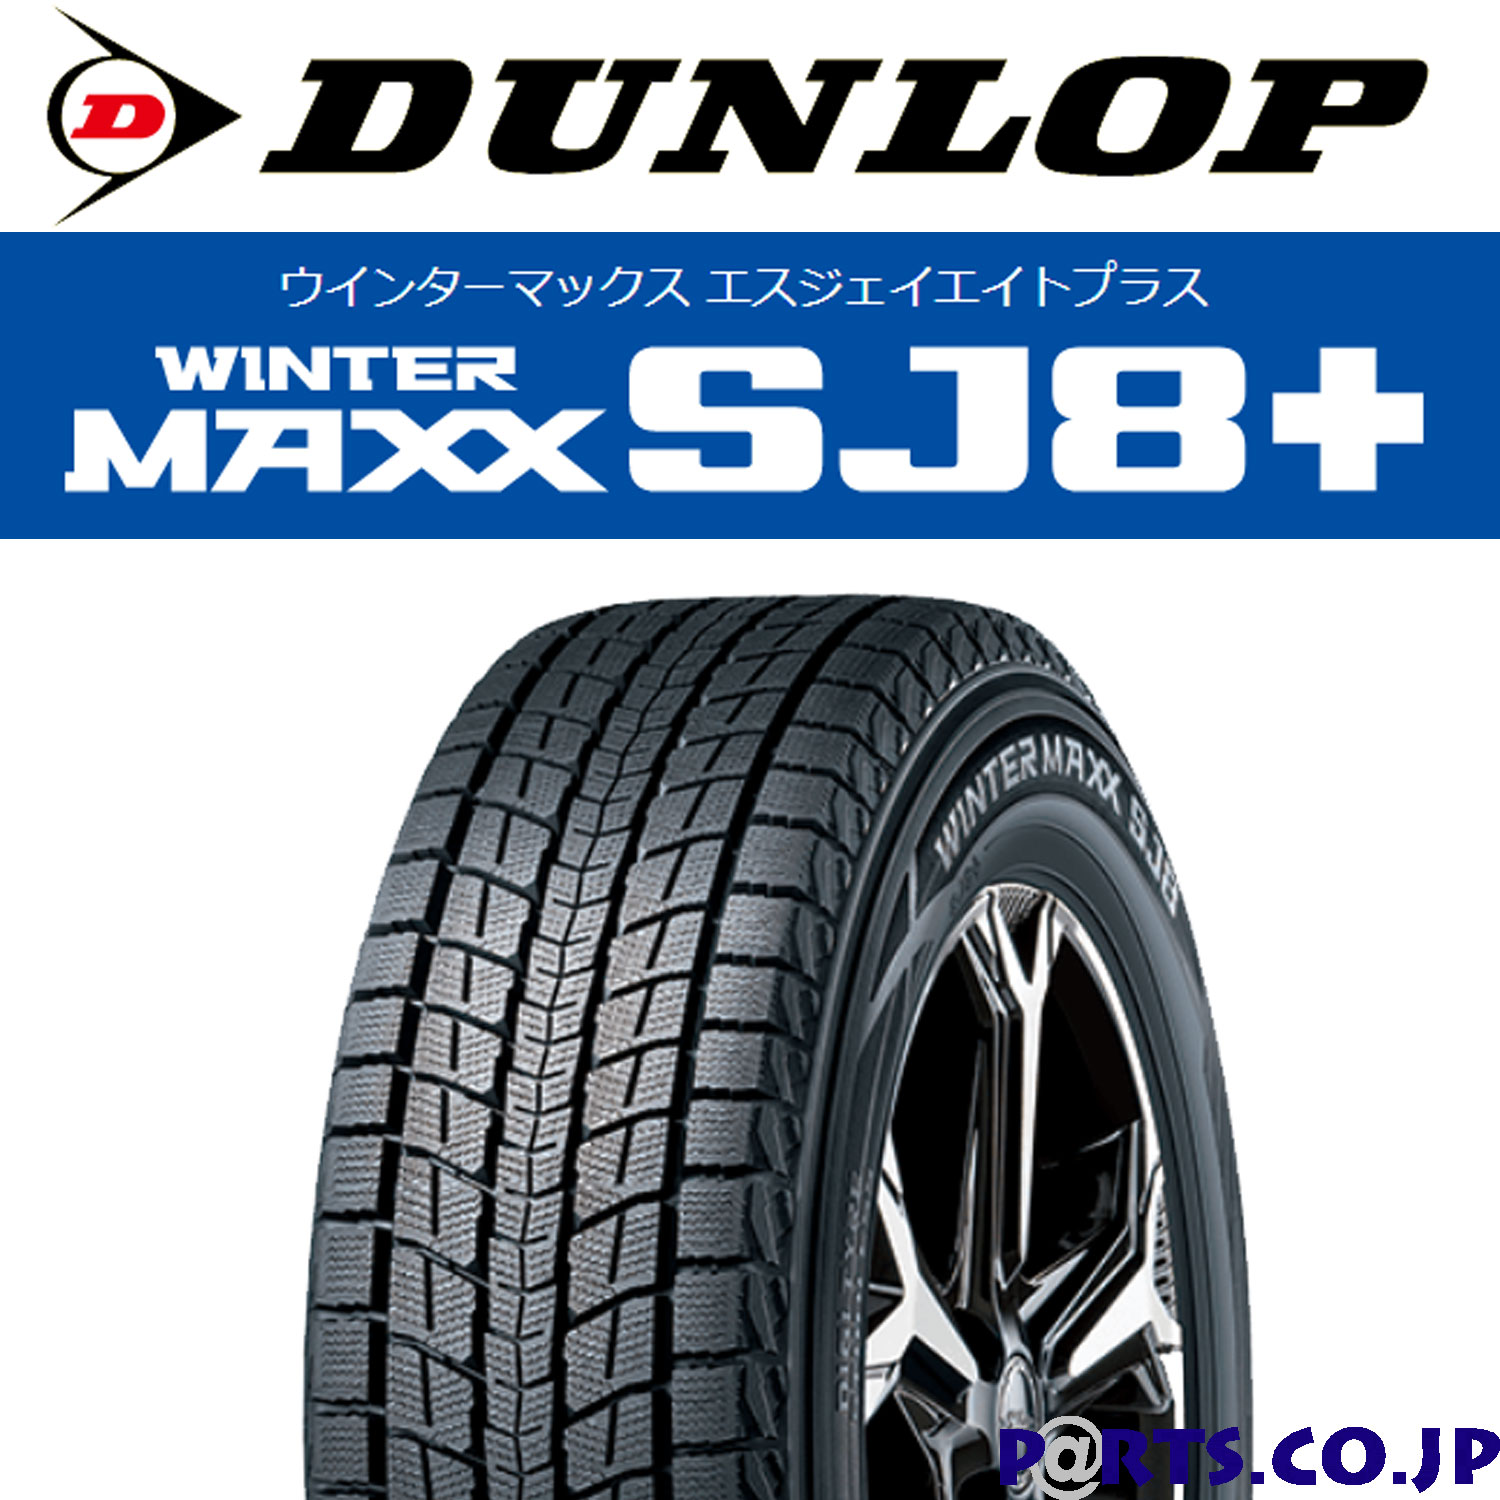 WINTER MAXX SJ8 スタッドレスタイヤ ダンロップ ウインターマックス SJ8 プラス 215/70R16 100Q シュナイダー  DR-02 6.5-16